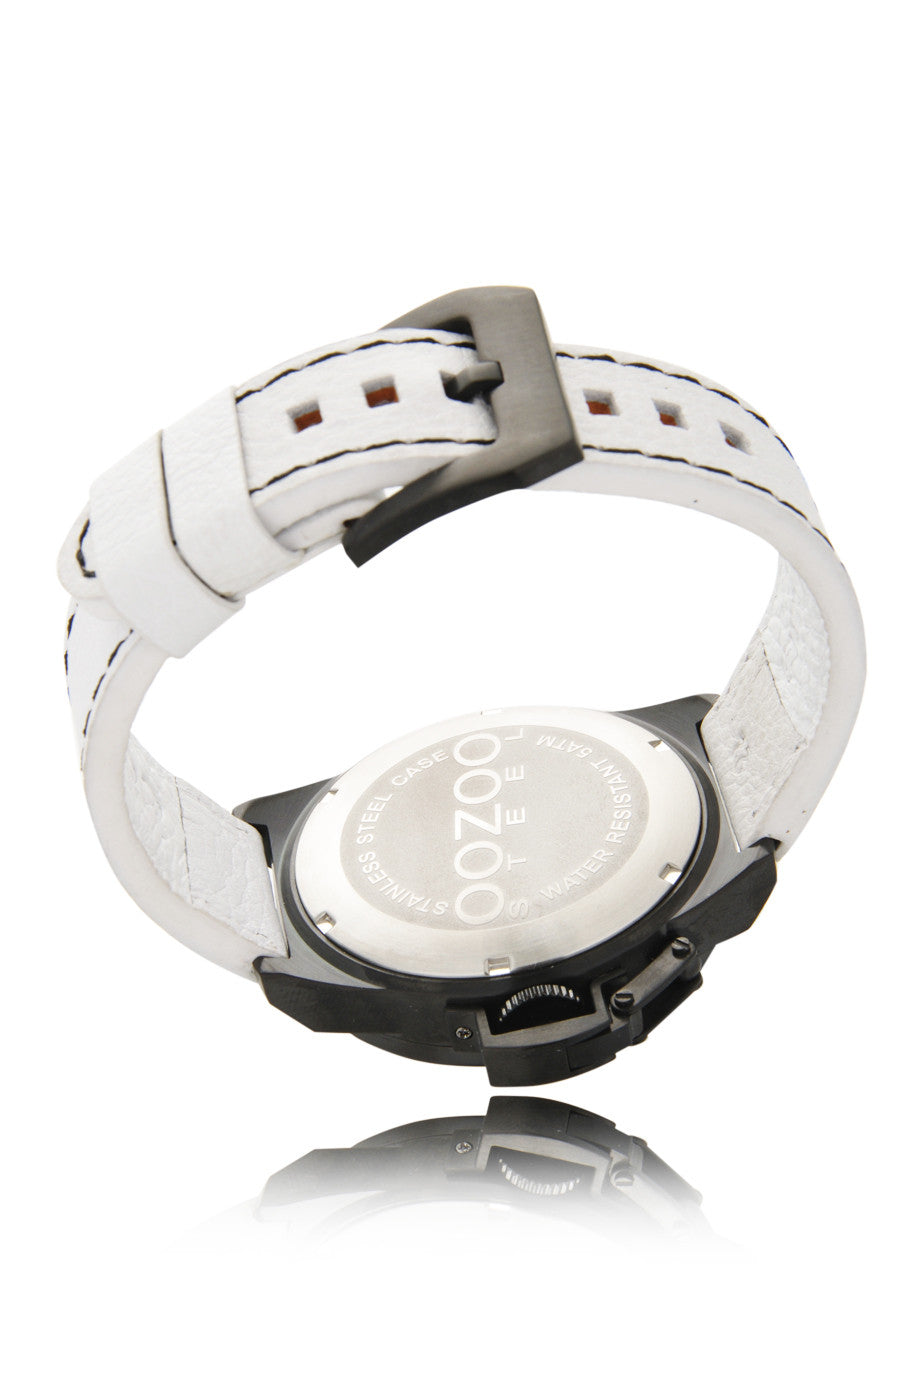 OOZOO OS112 Black White Watch